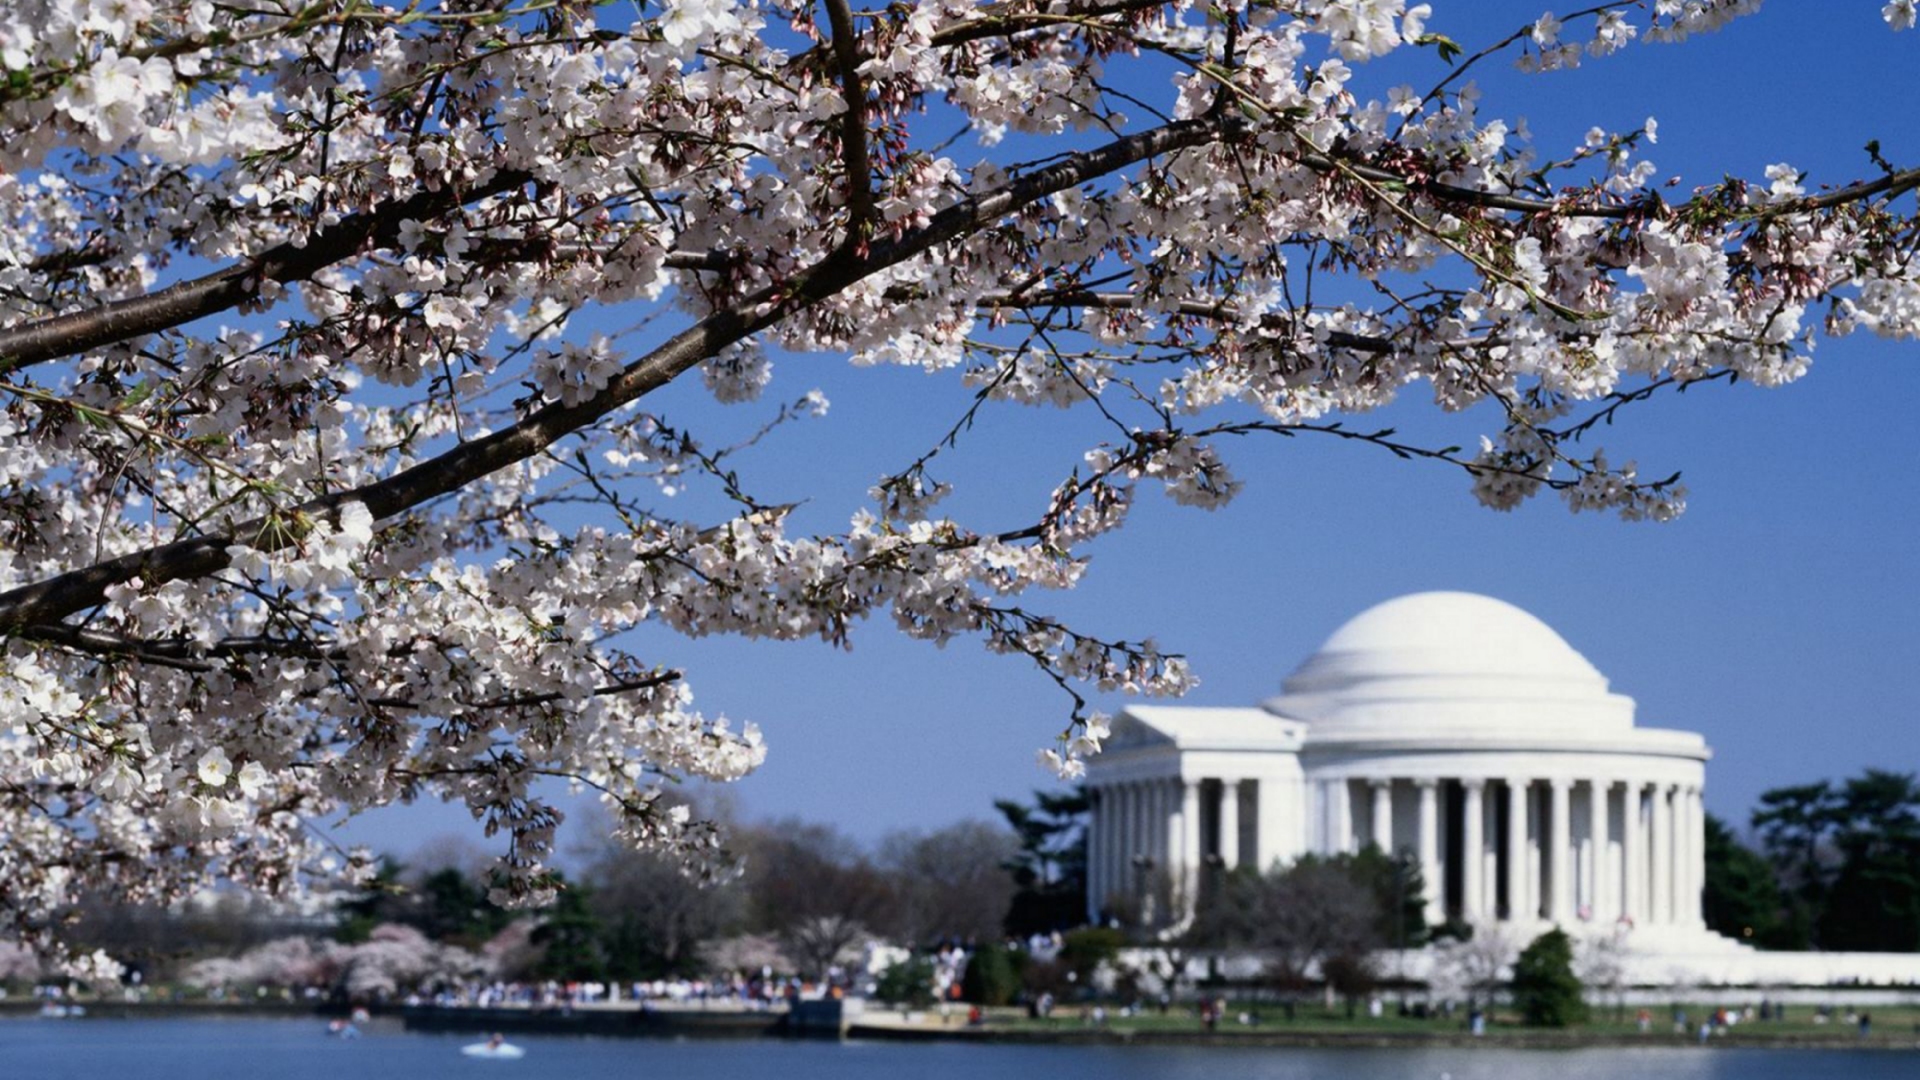 The Thomas Jefferson Memorial Washington Dc